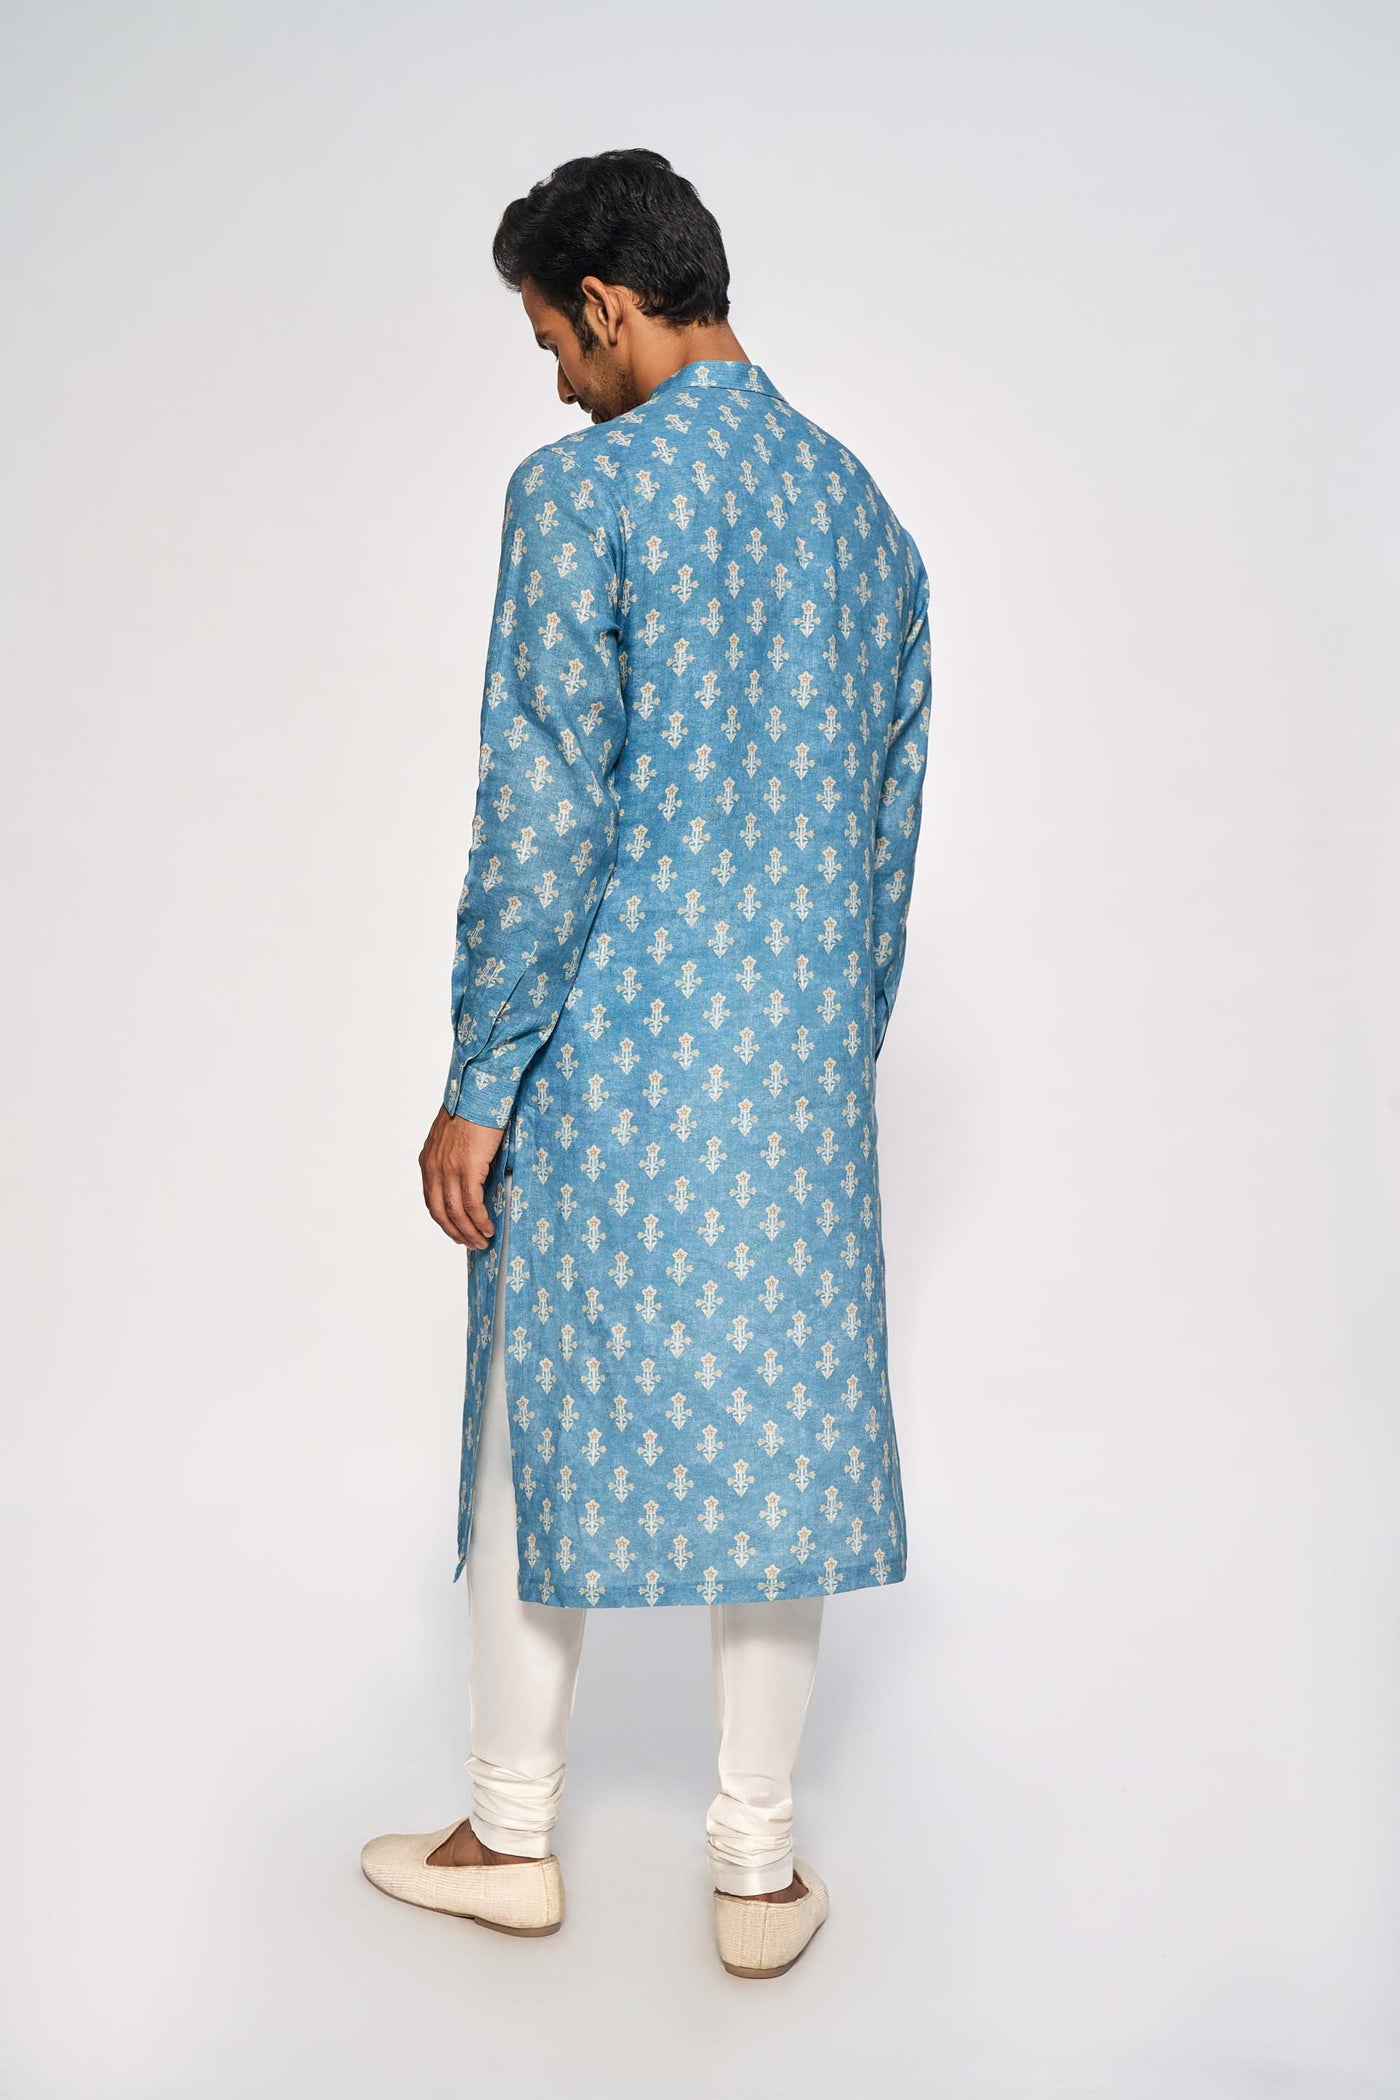 Anita Dongre menswear Rishi Kurta Blue festive indian designer wear online shopping melange singapore